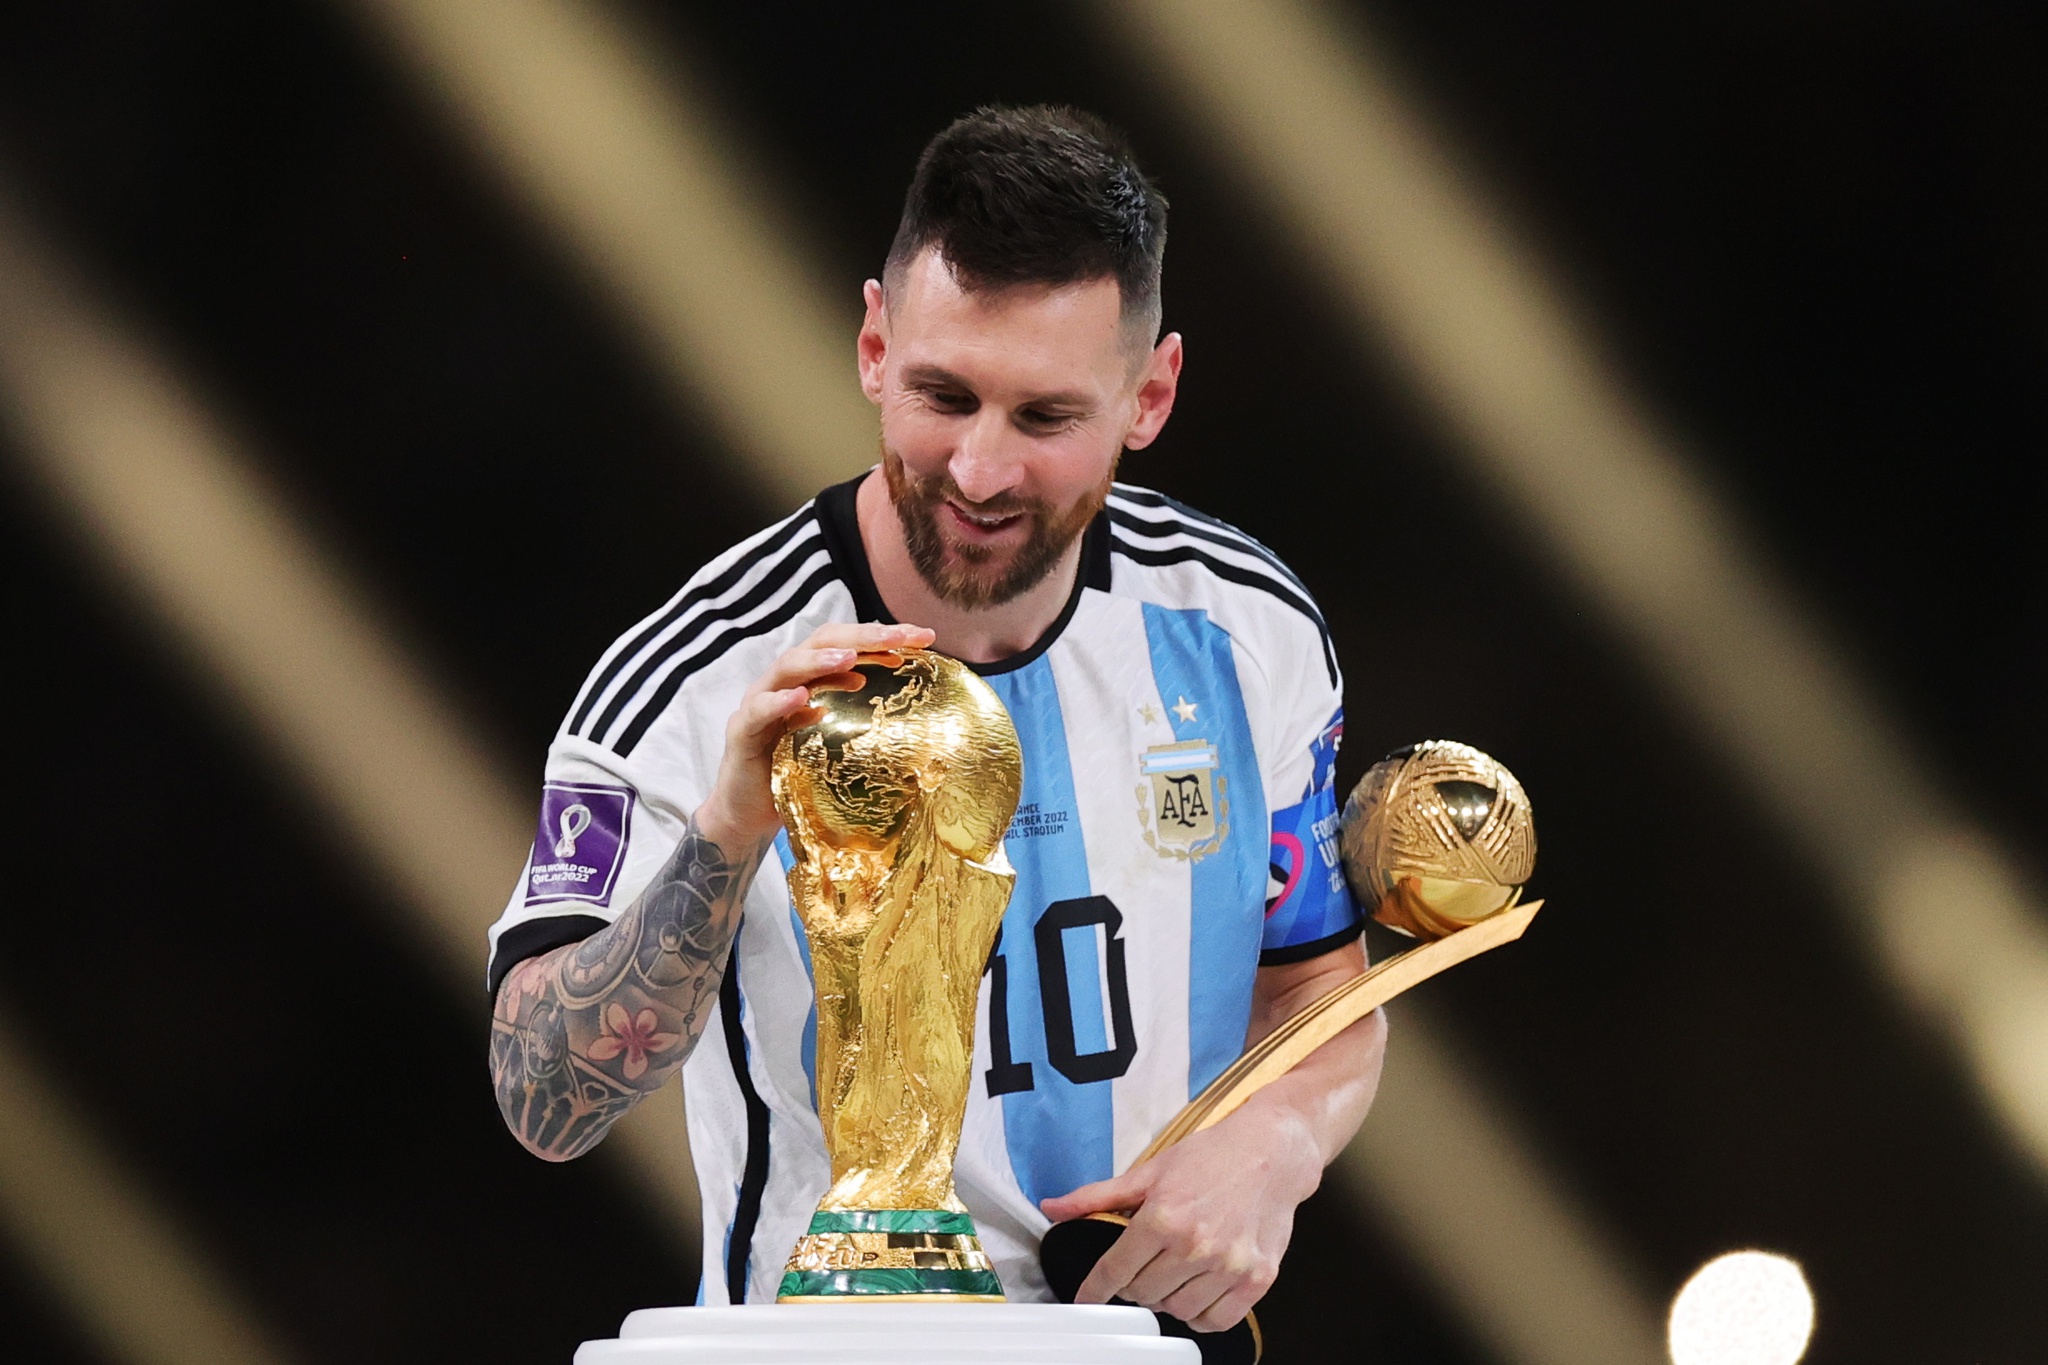 Camisolas de Messi do Campeonato do Mundo vendidas por 7,14 milhões de euros